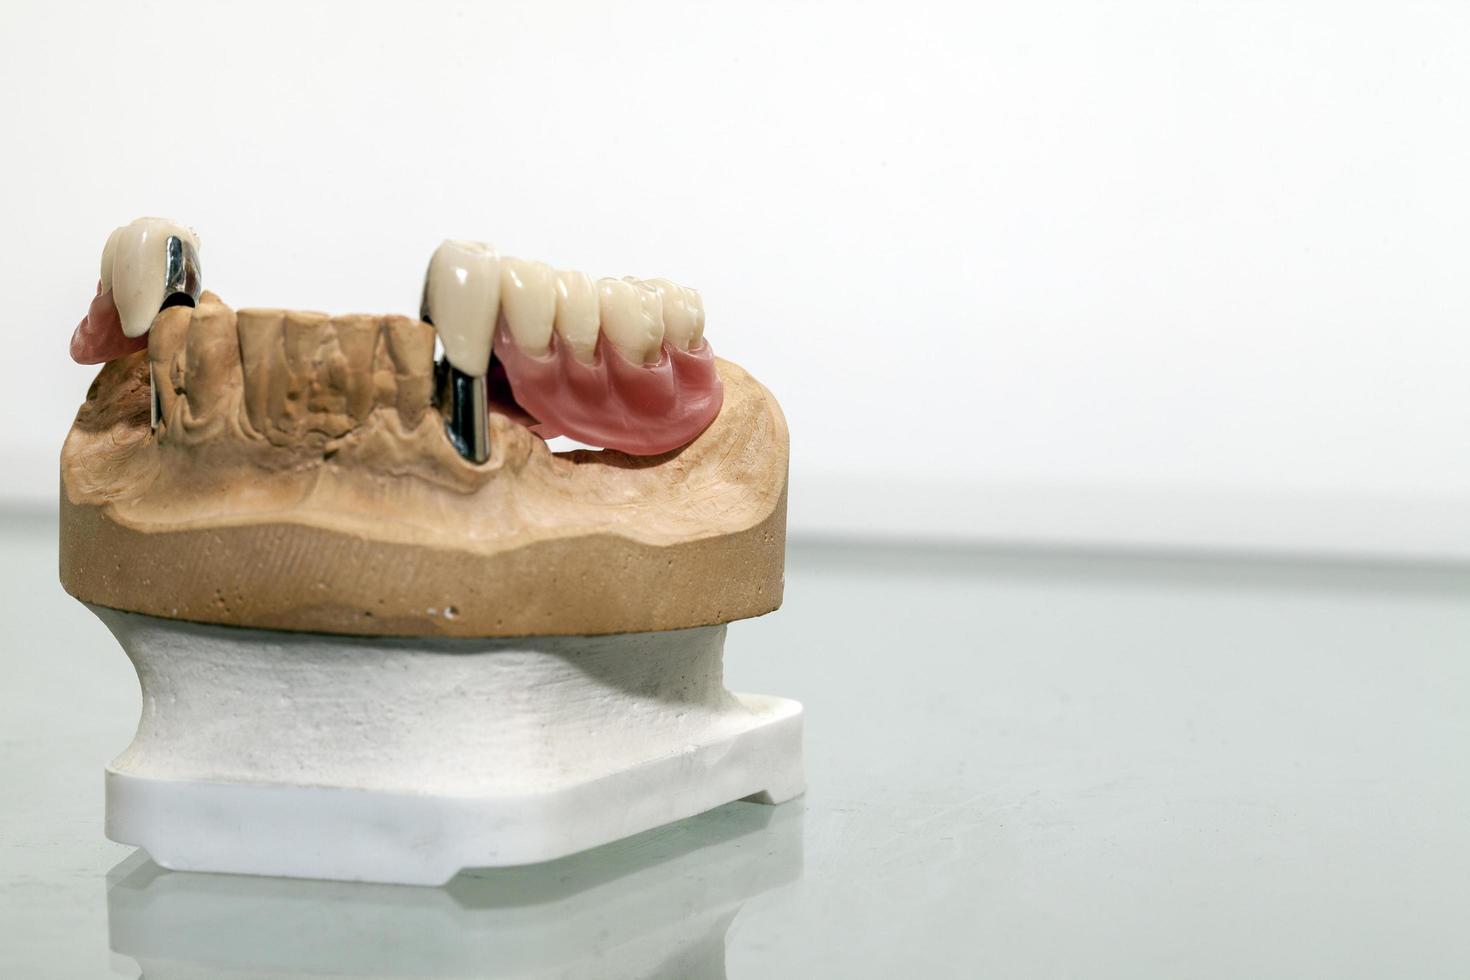 Placa dental de porcelana de circonio en la tienda del dentista foto